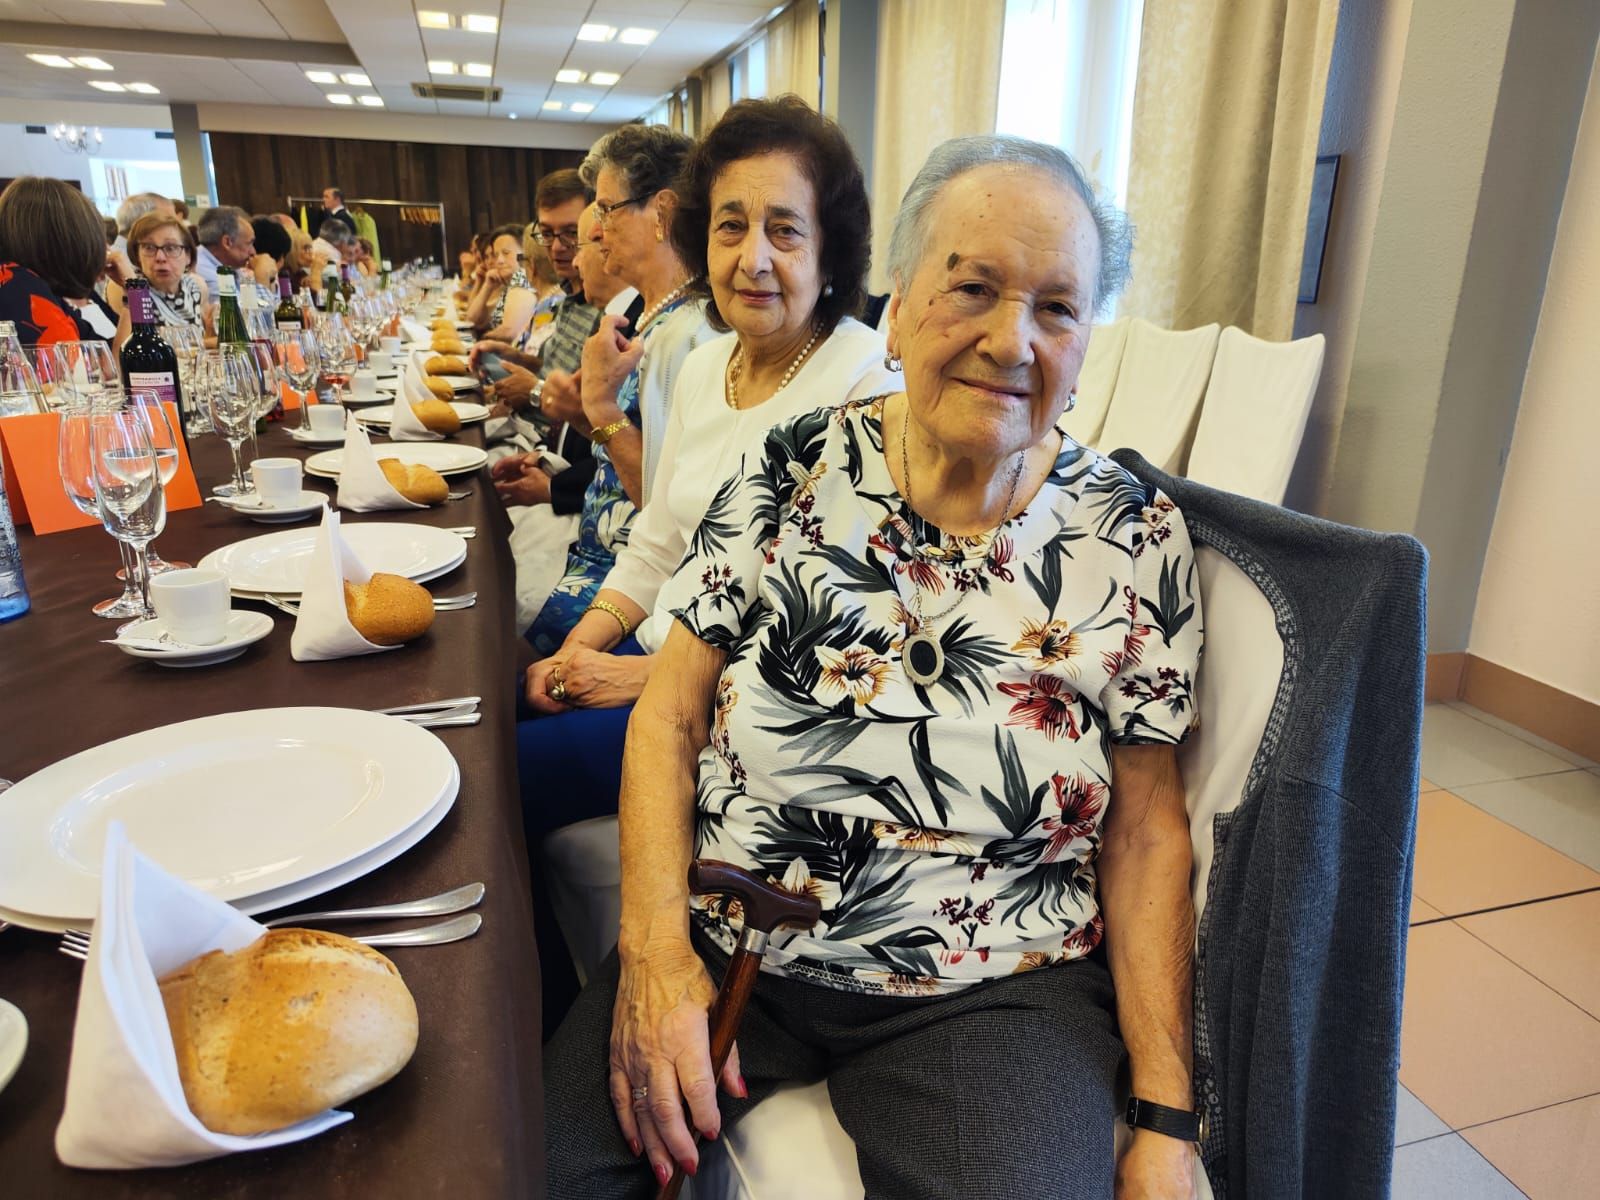 La gran fiesta de los jubilados de Siero: 200 personas participan en el día del socio del hogar El Carmín